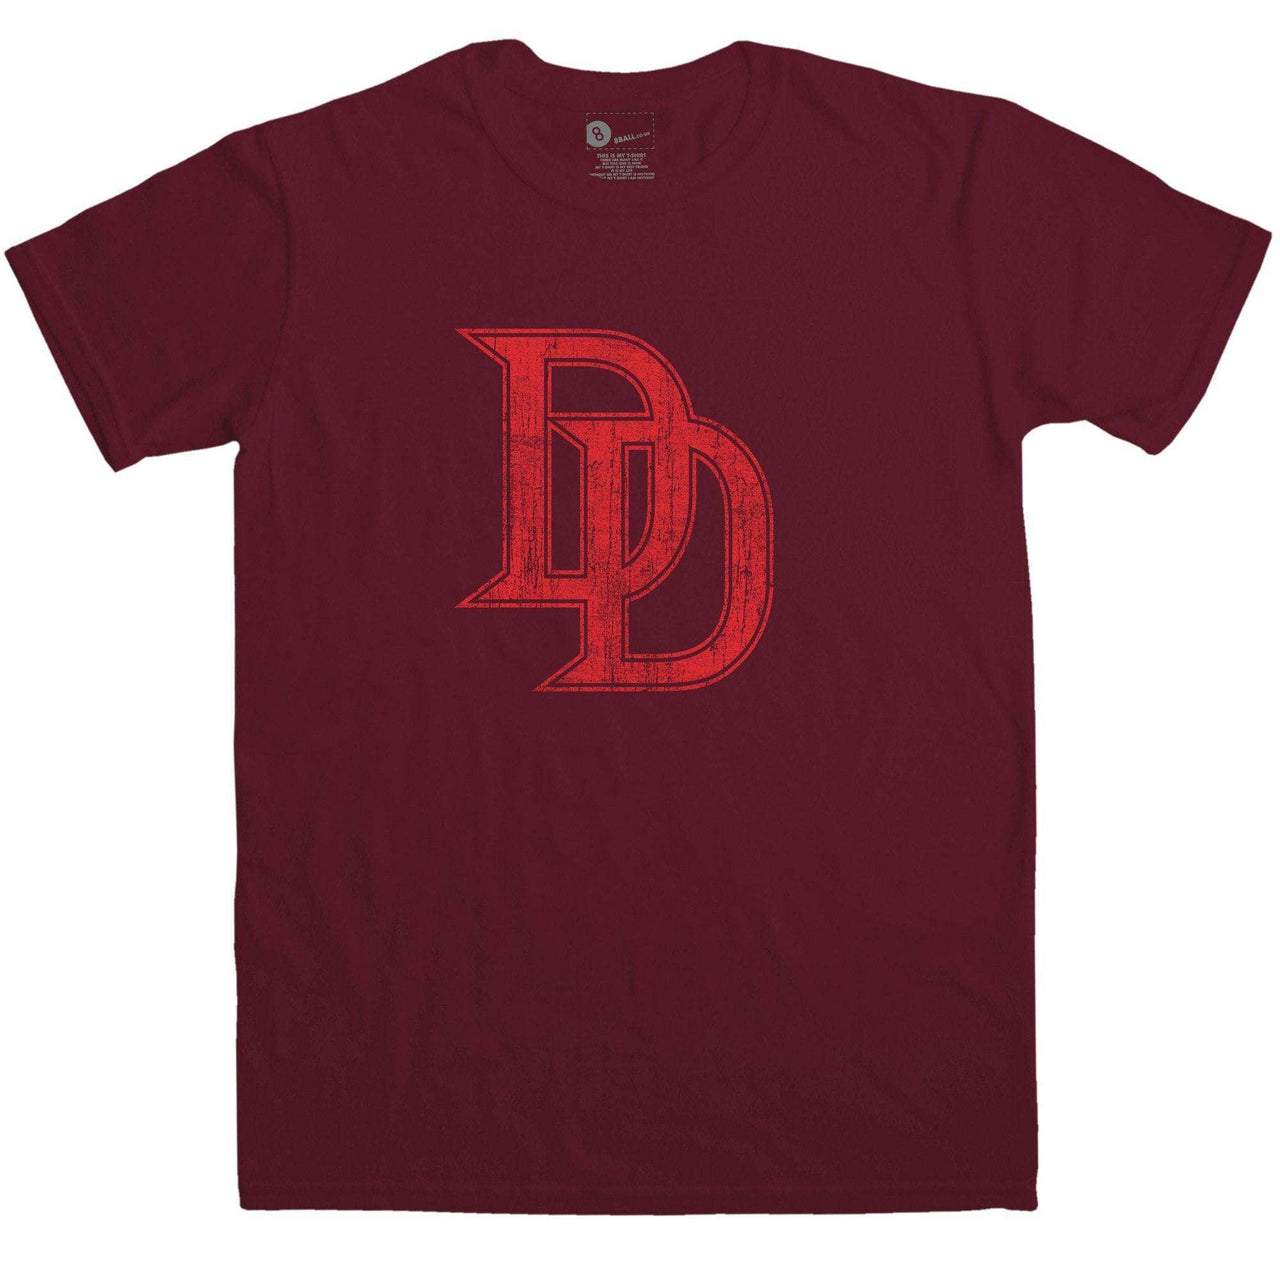 Devil D's T-Shirt For Men 8Ball